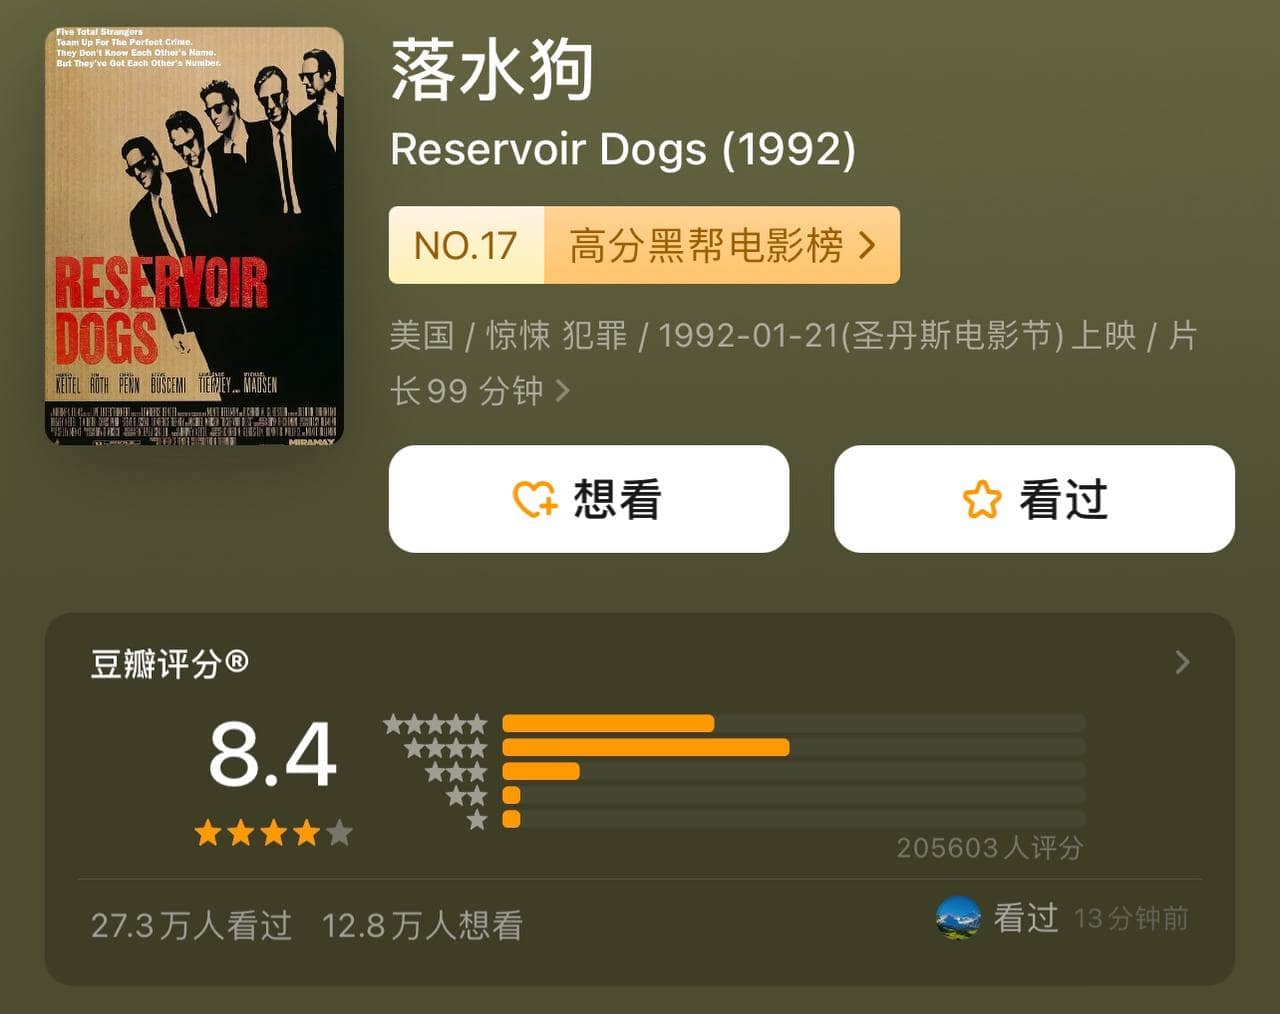 落水狗 Reservoir Dogs (1992) 2160p BluRay REMUX (原盘) DTS-HD MA 5.1 外挂双语 [高分黑帮电影] [已刮削]